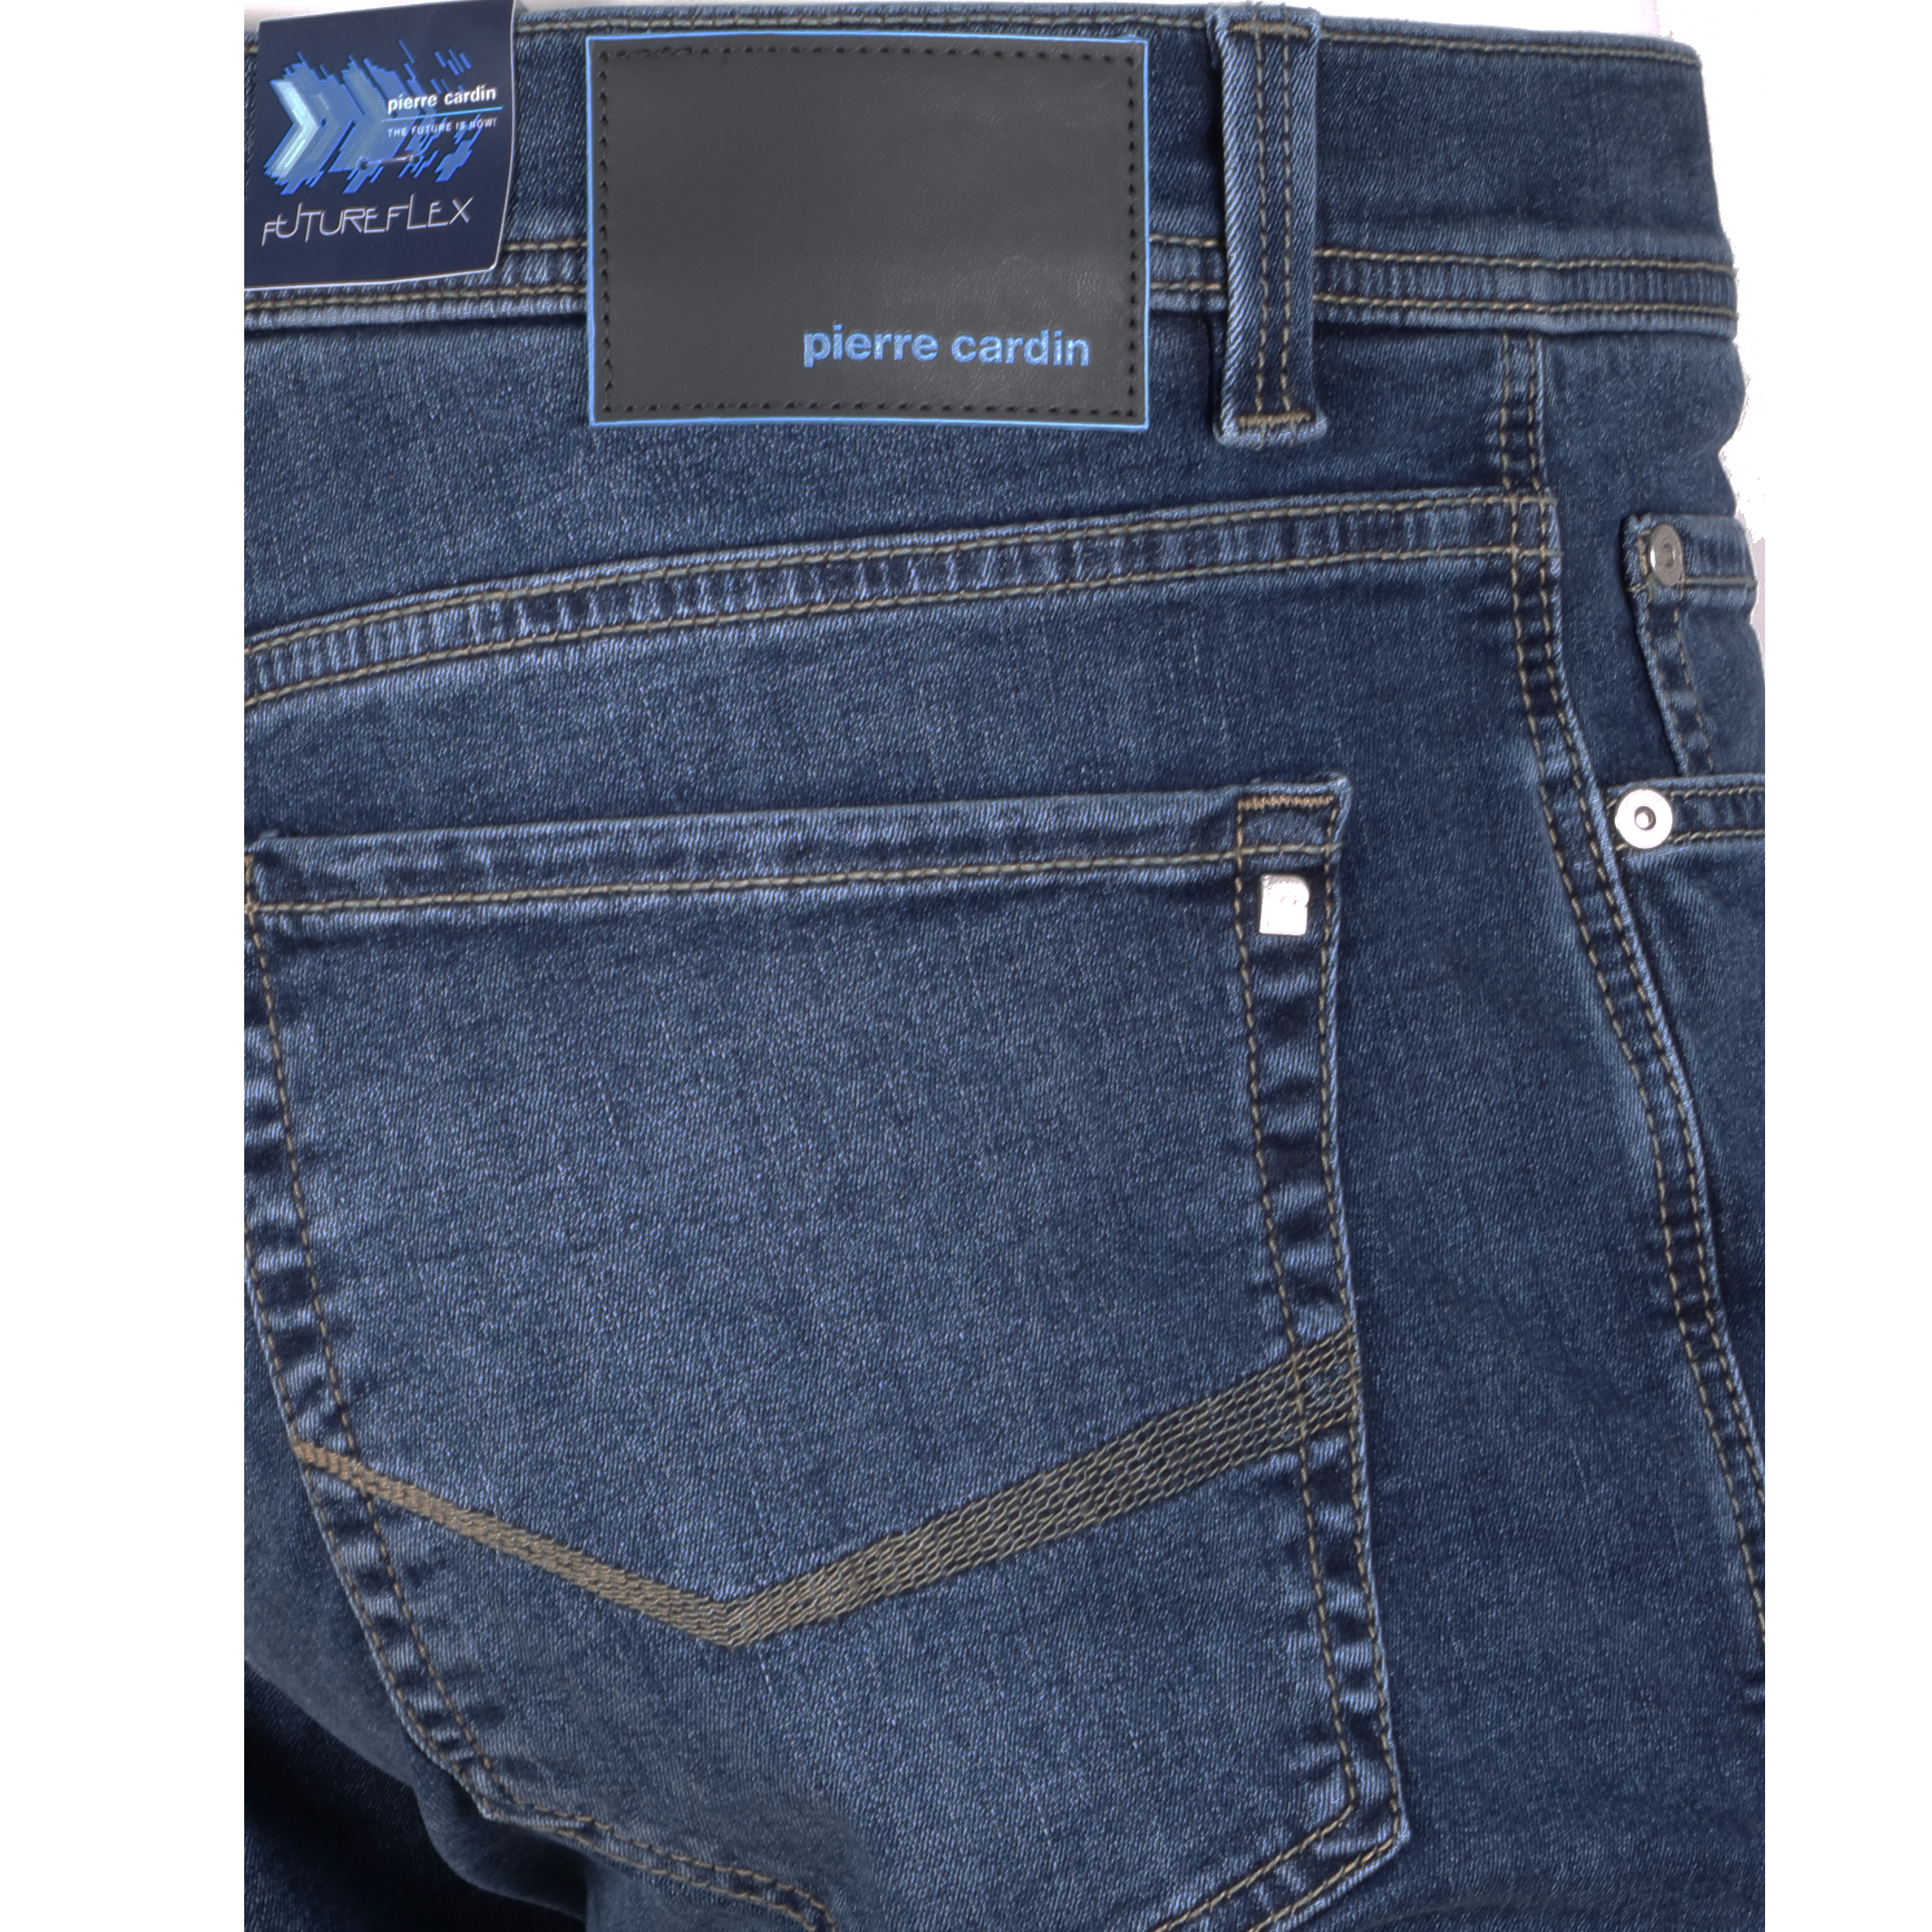 Pierre Cardin Herren Jeans Lyon Futureflex - blau used 40/34